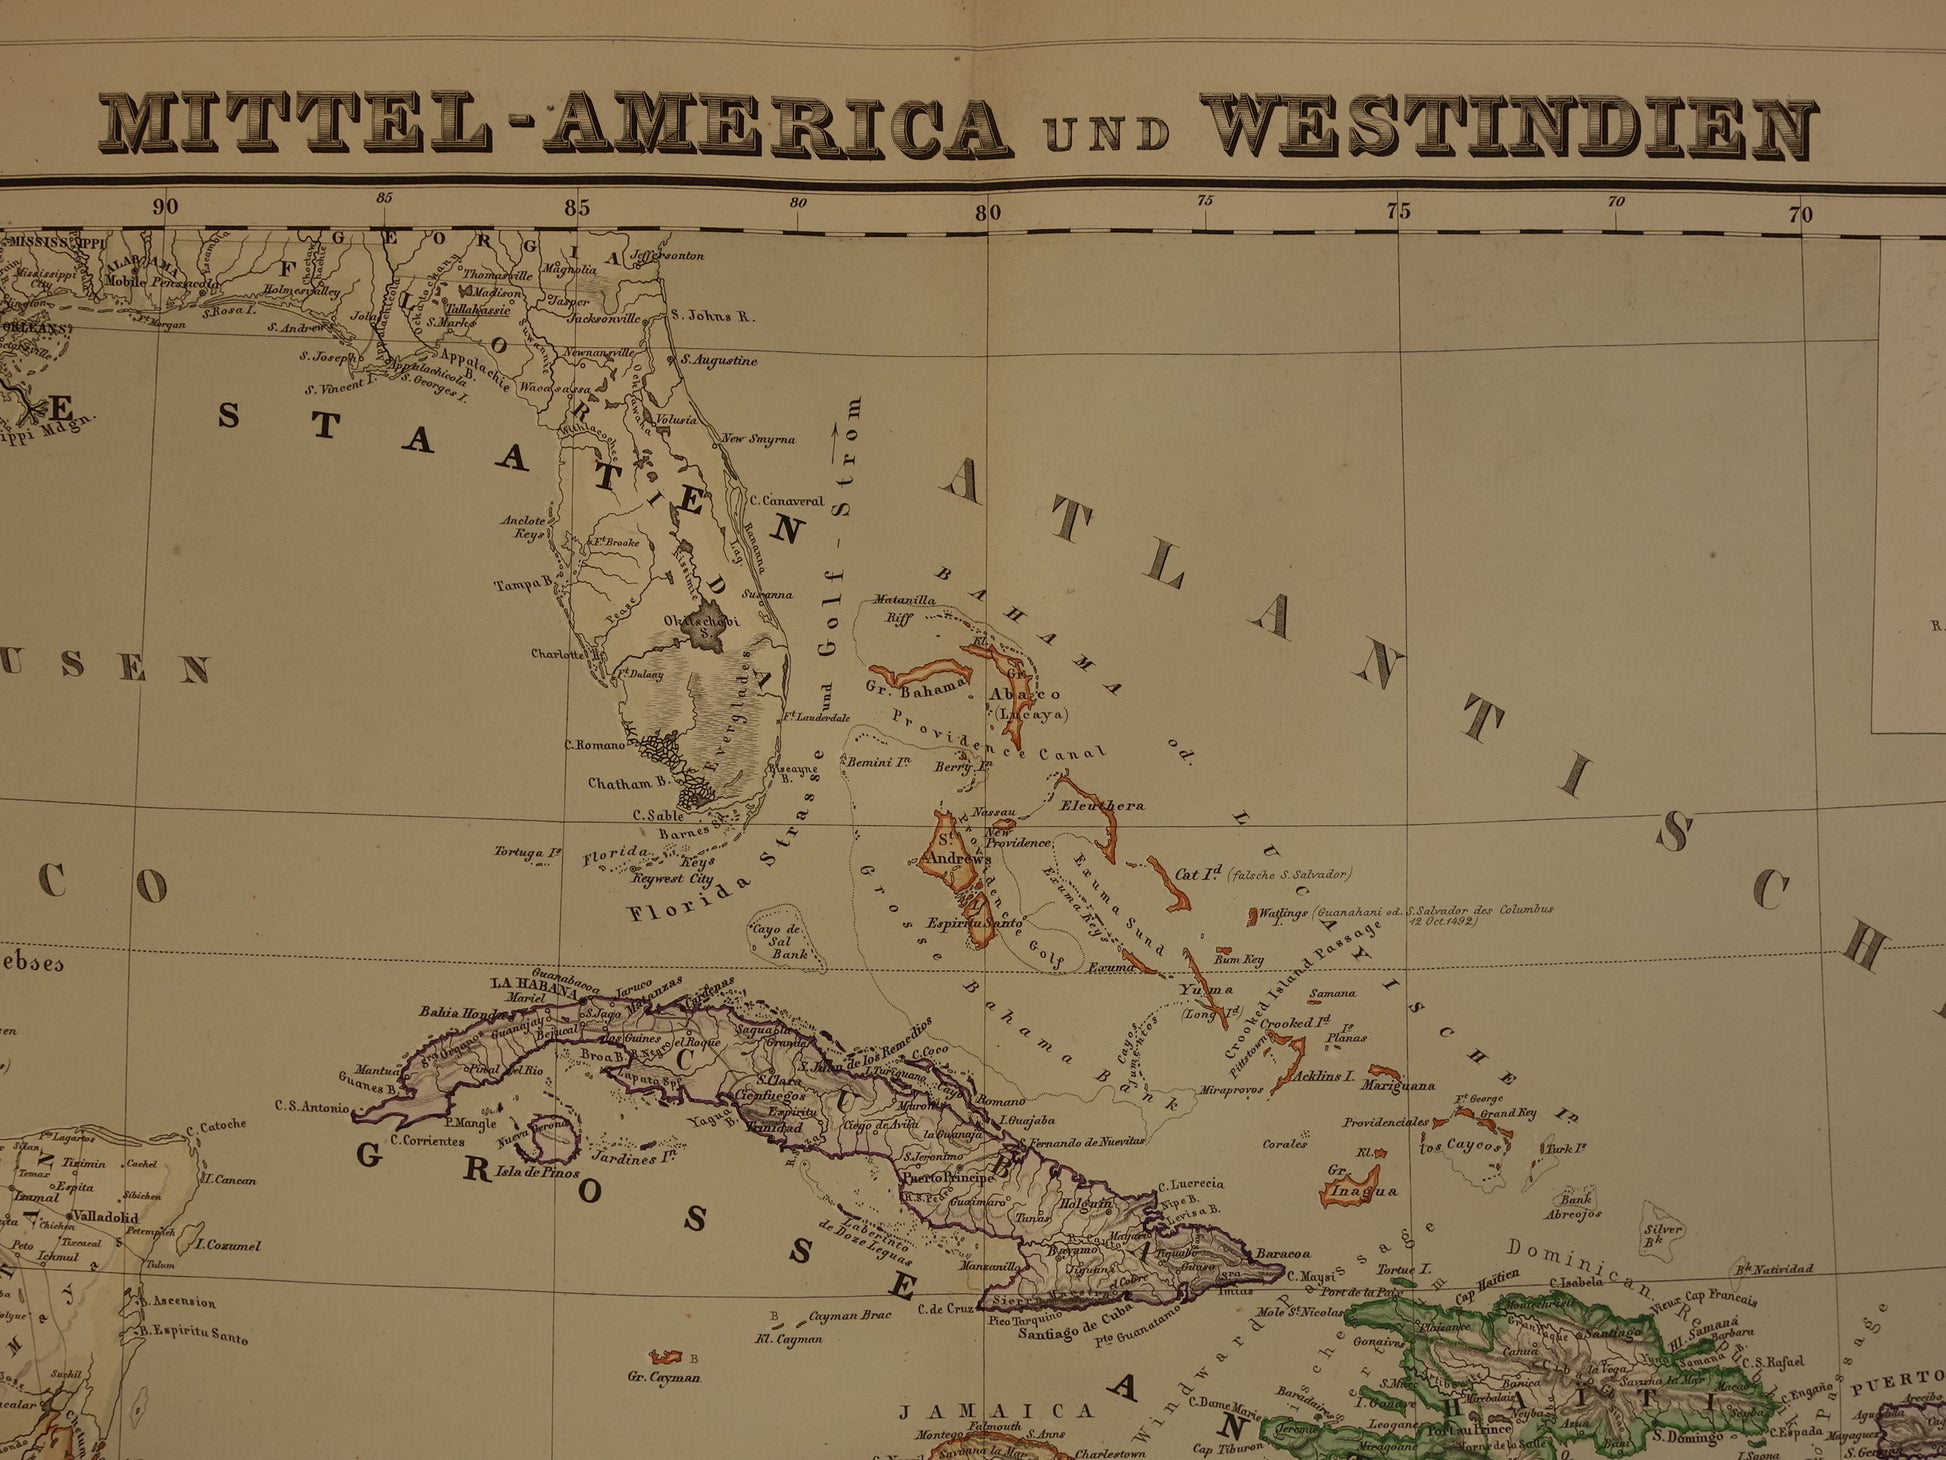 39 Mittel-America und Westindien Heinrich Kiepert 1860